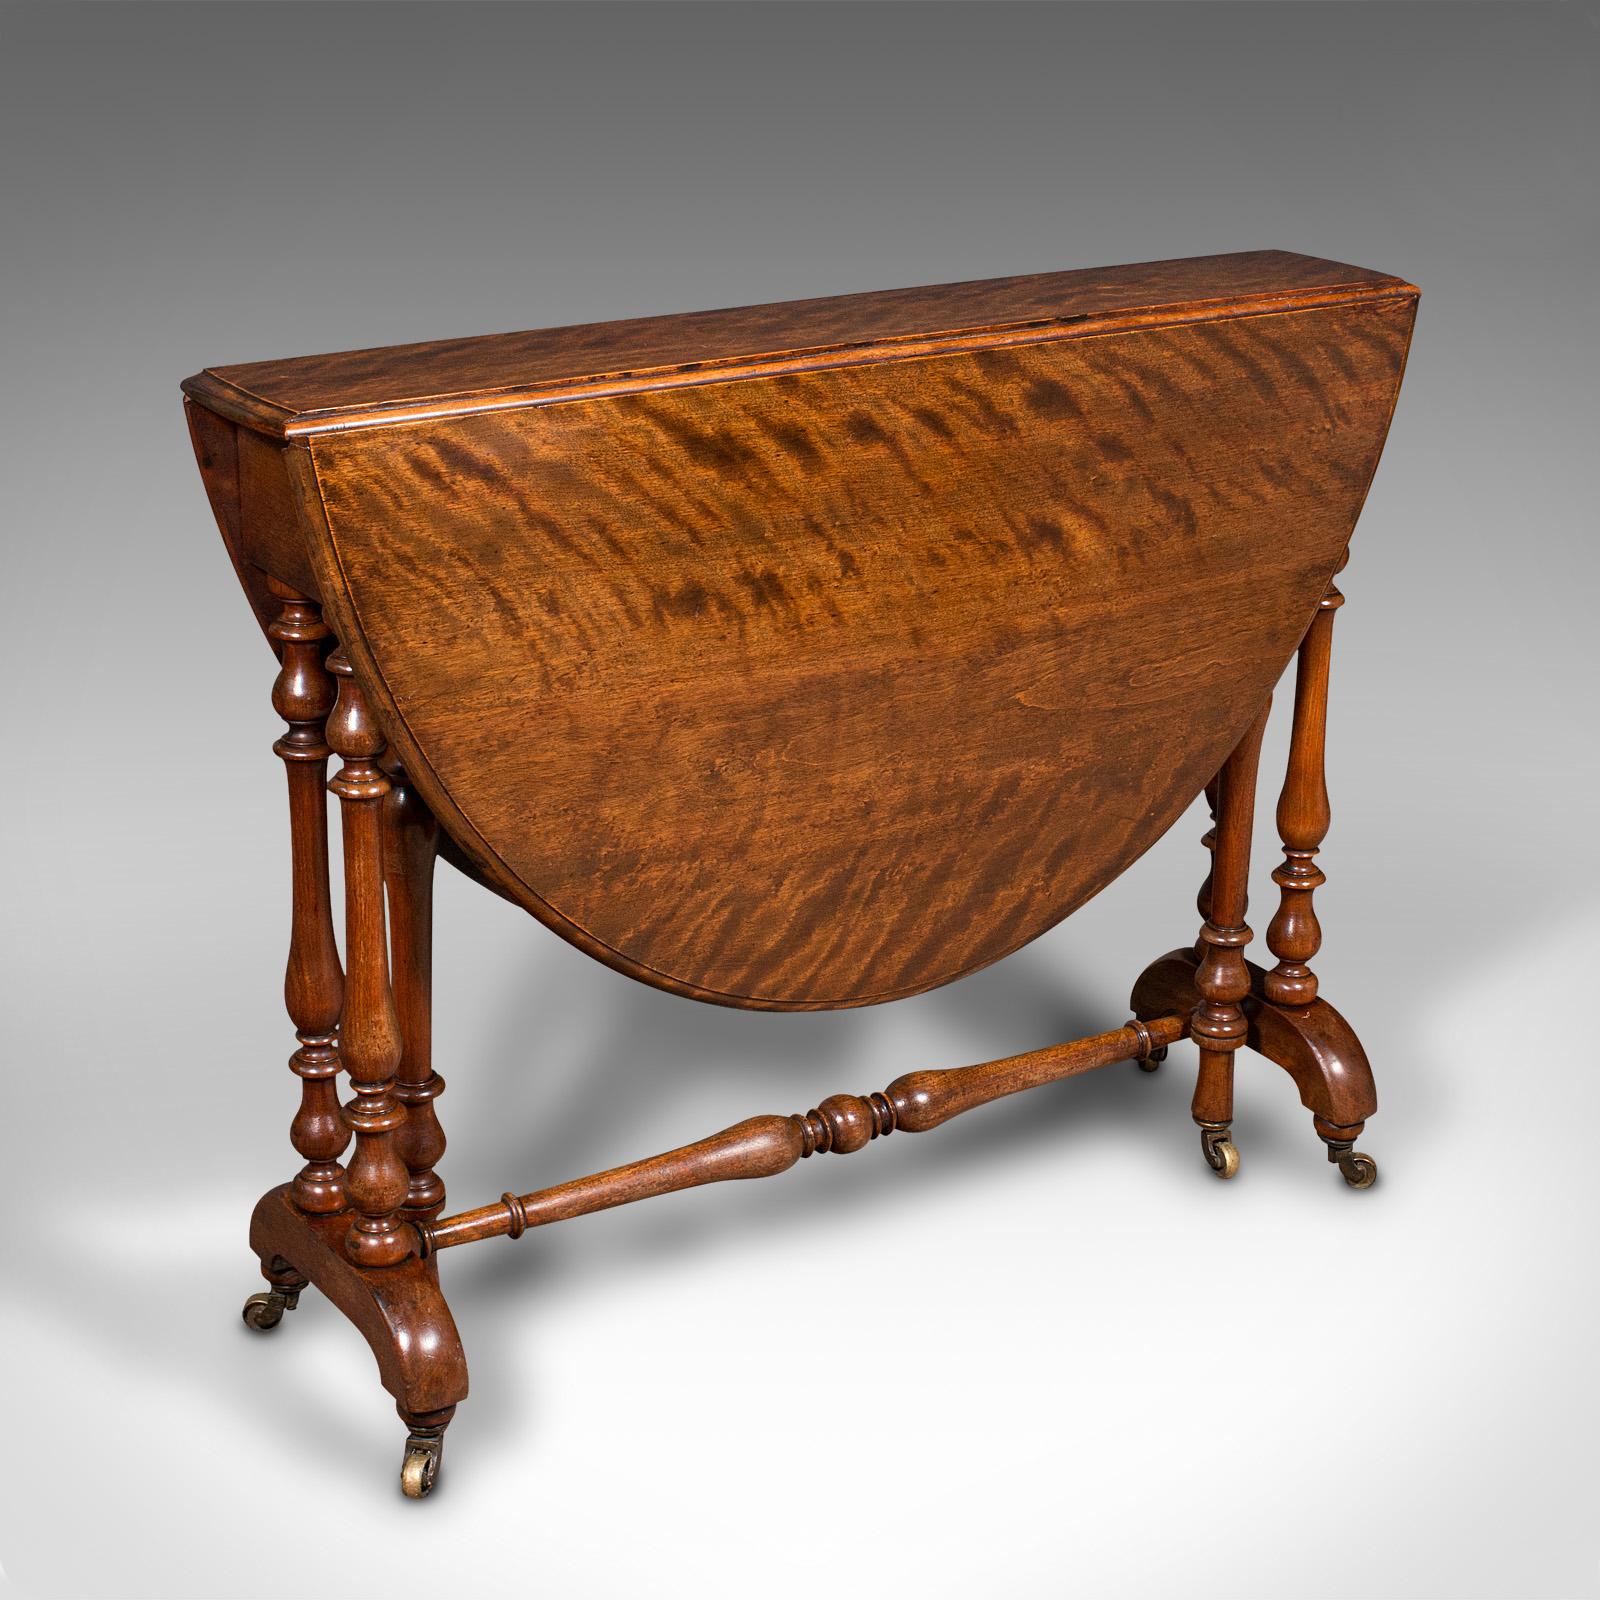 Il s'agit d'une ancienne table ovale Sutherland. Table d'appoint anglaise à pieds en acajou satiné, datant du début de la période victorienne, vers 1850.

agrémenté de motifs exquis et de couleurs profondes.
Présente une patine d'usage désirable